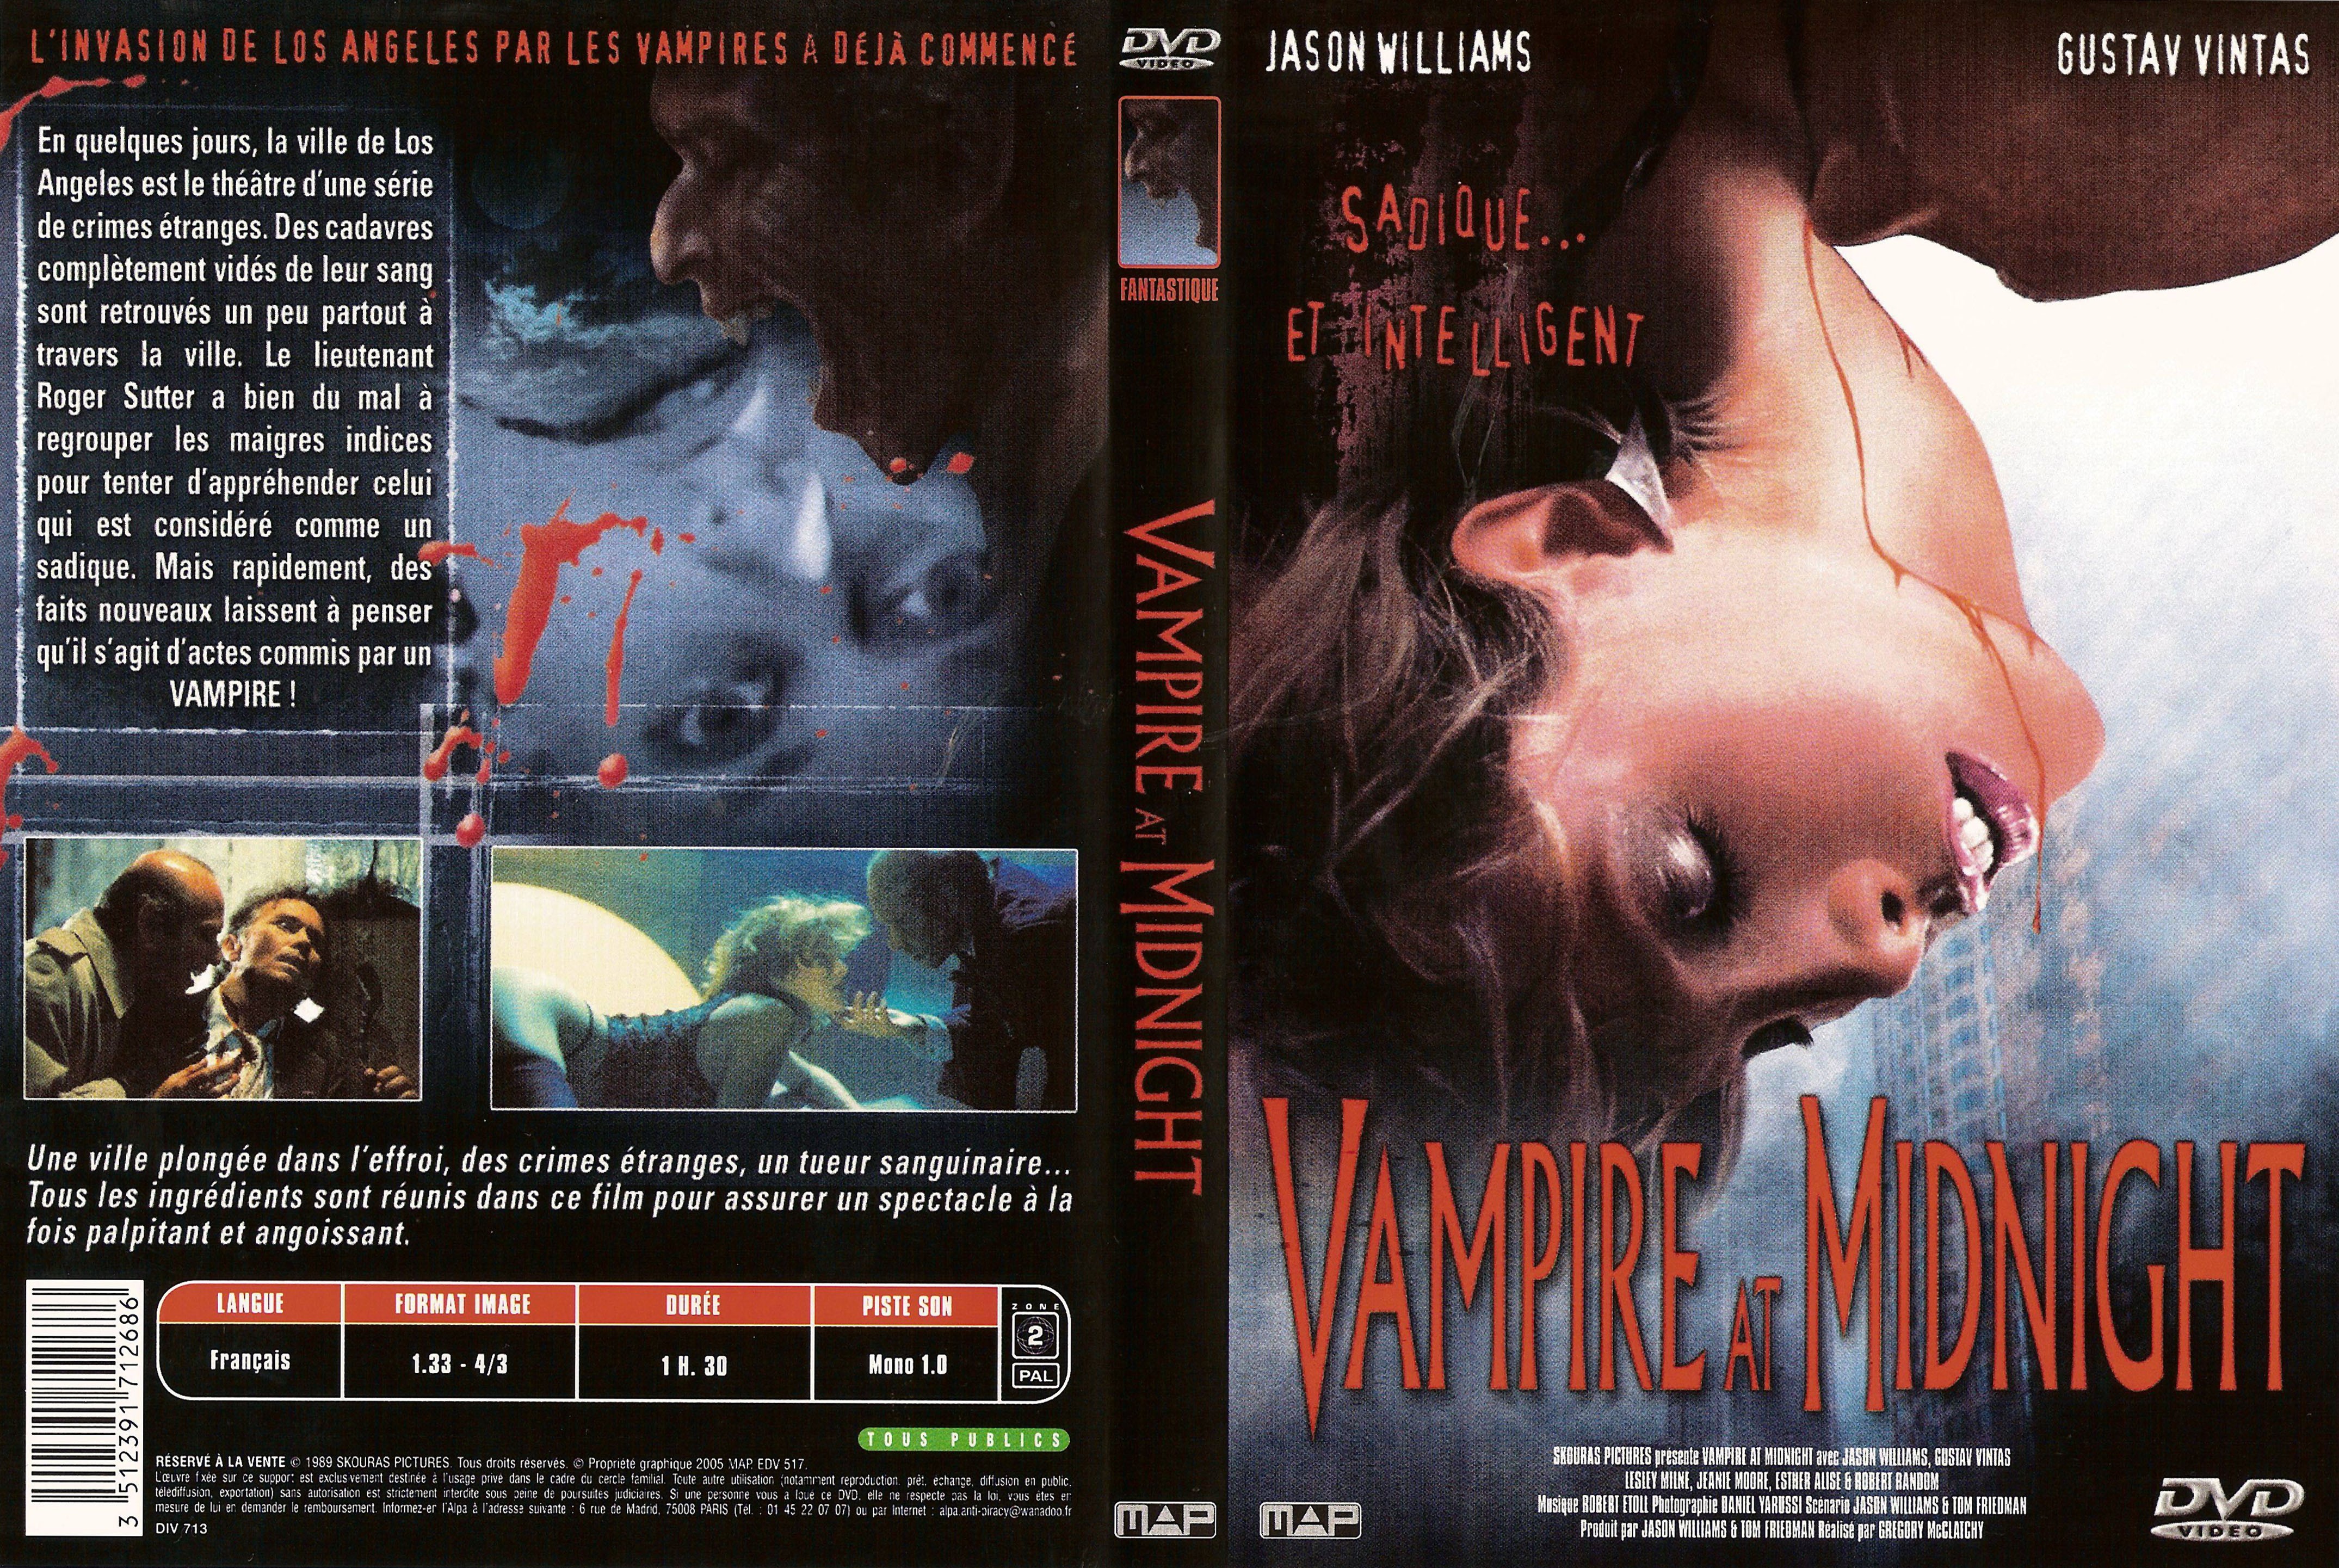 Jaquette DVD Vampire at midnight